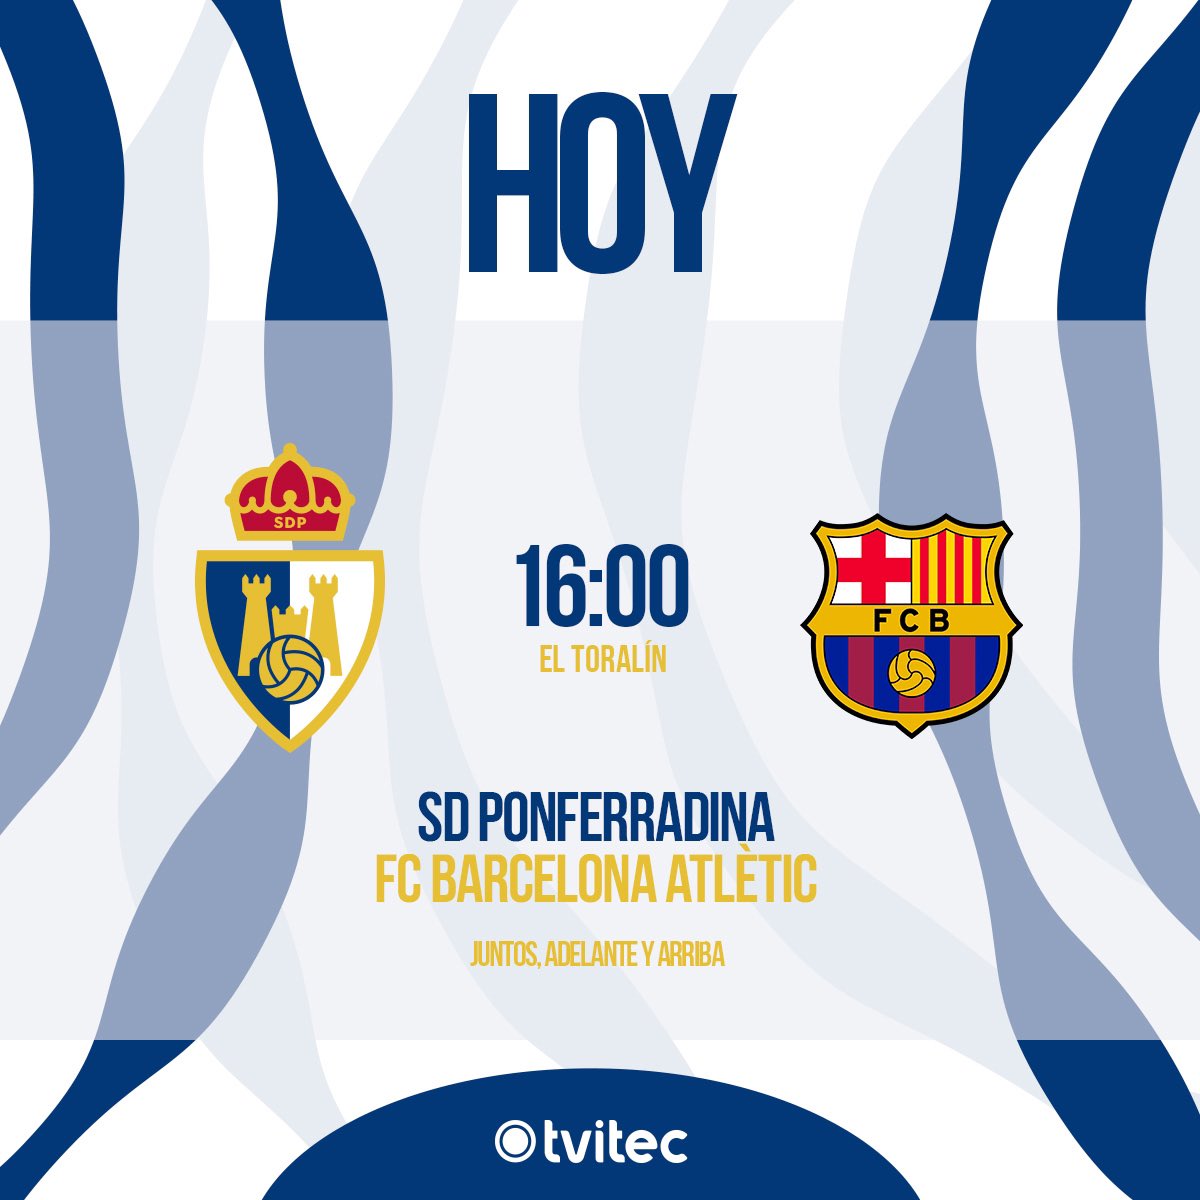 ¡Día de partido!
¡Día de Deportiva! ⚪️🔵⚪️🔵
Desde las 16:00 horas jugamos ante el @FCBarcelonaB. 
¡Nos vemos en El Toralín!
#Adelanteyarriba
#SomosDeportiva
#WeAreDeportiva